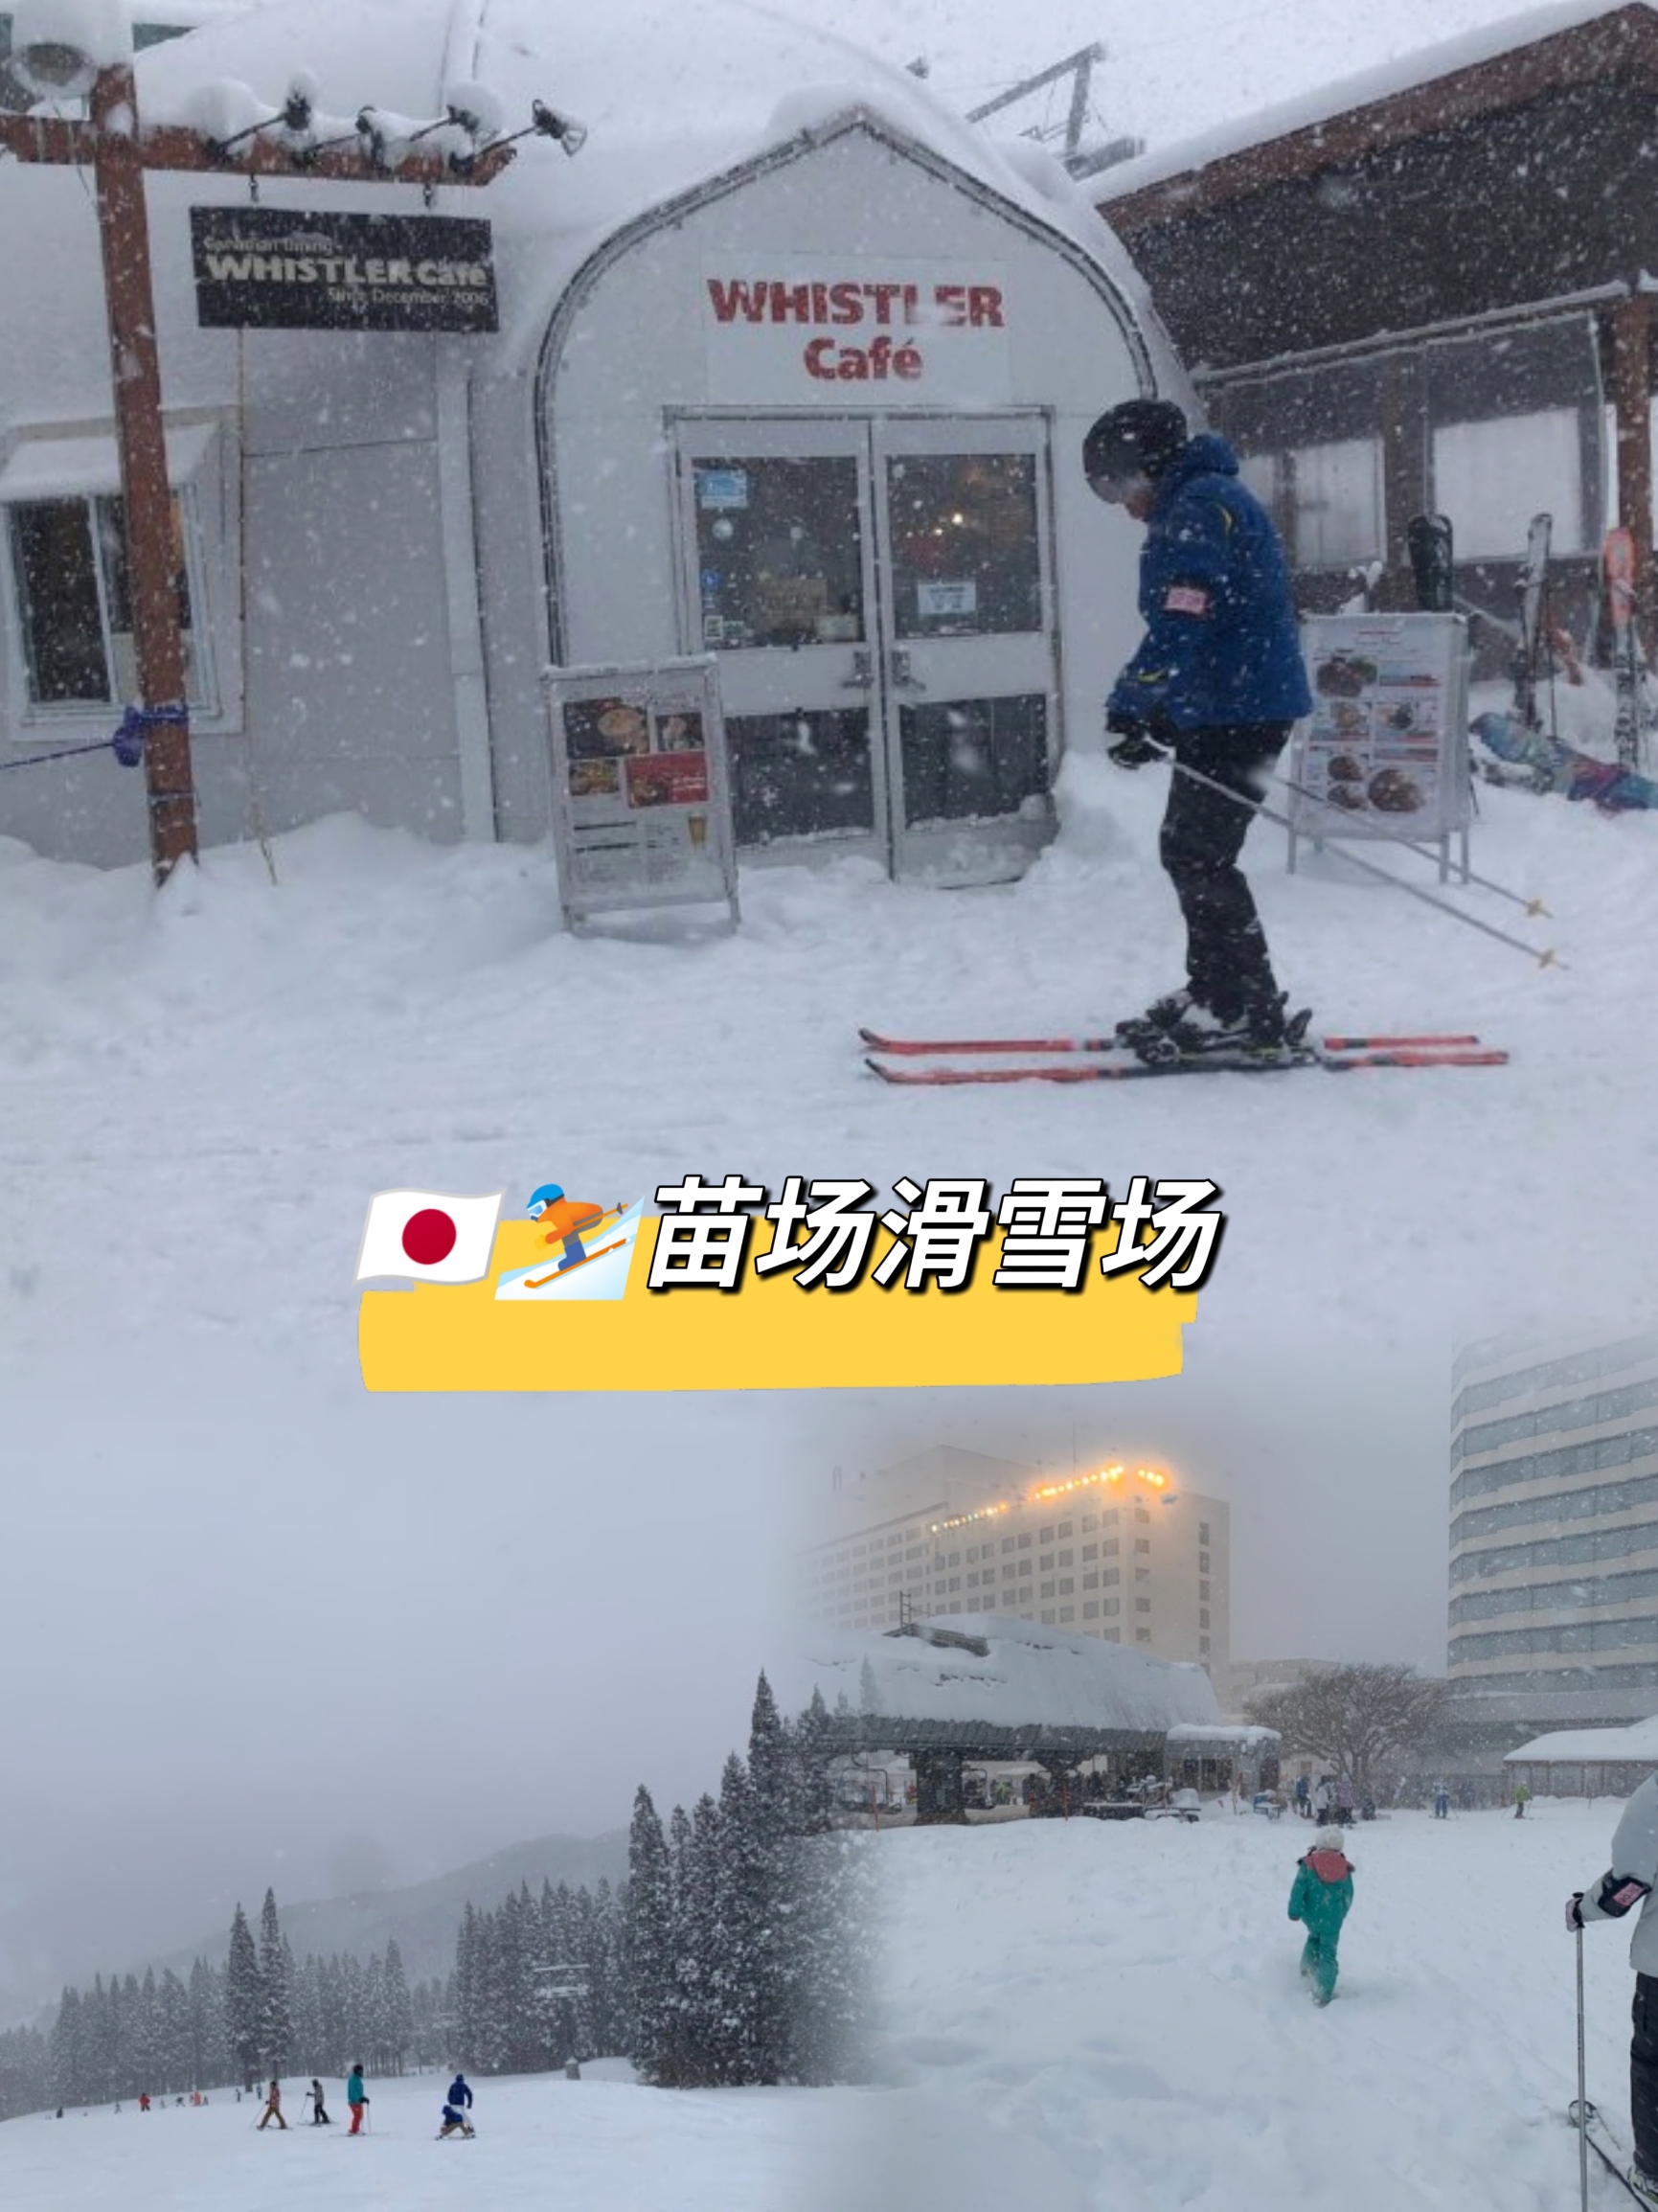 “探寻冬日乐园：美妙苗场滑雪场”